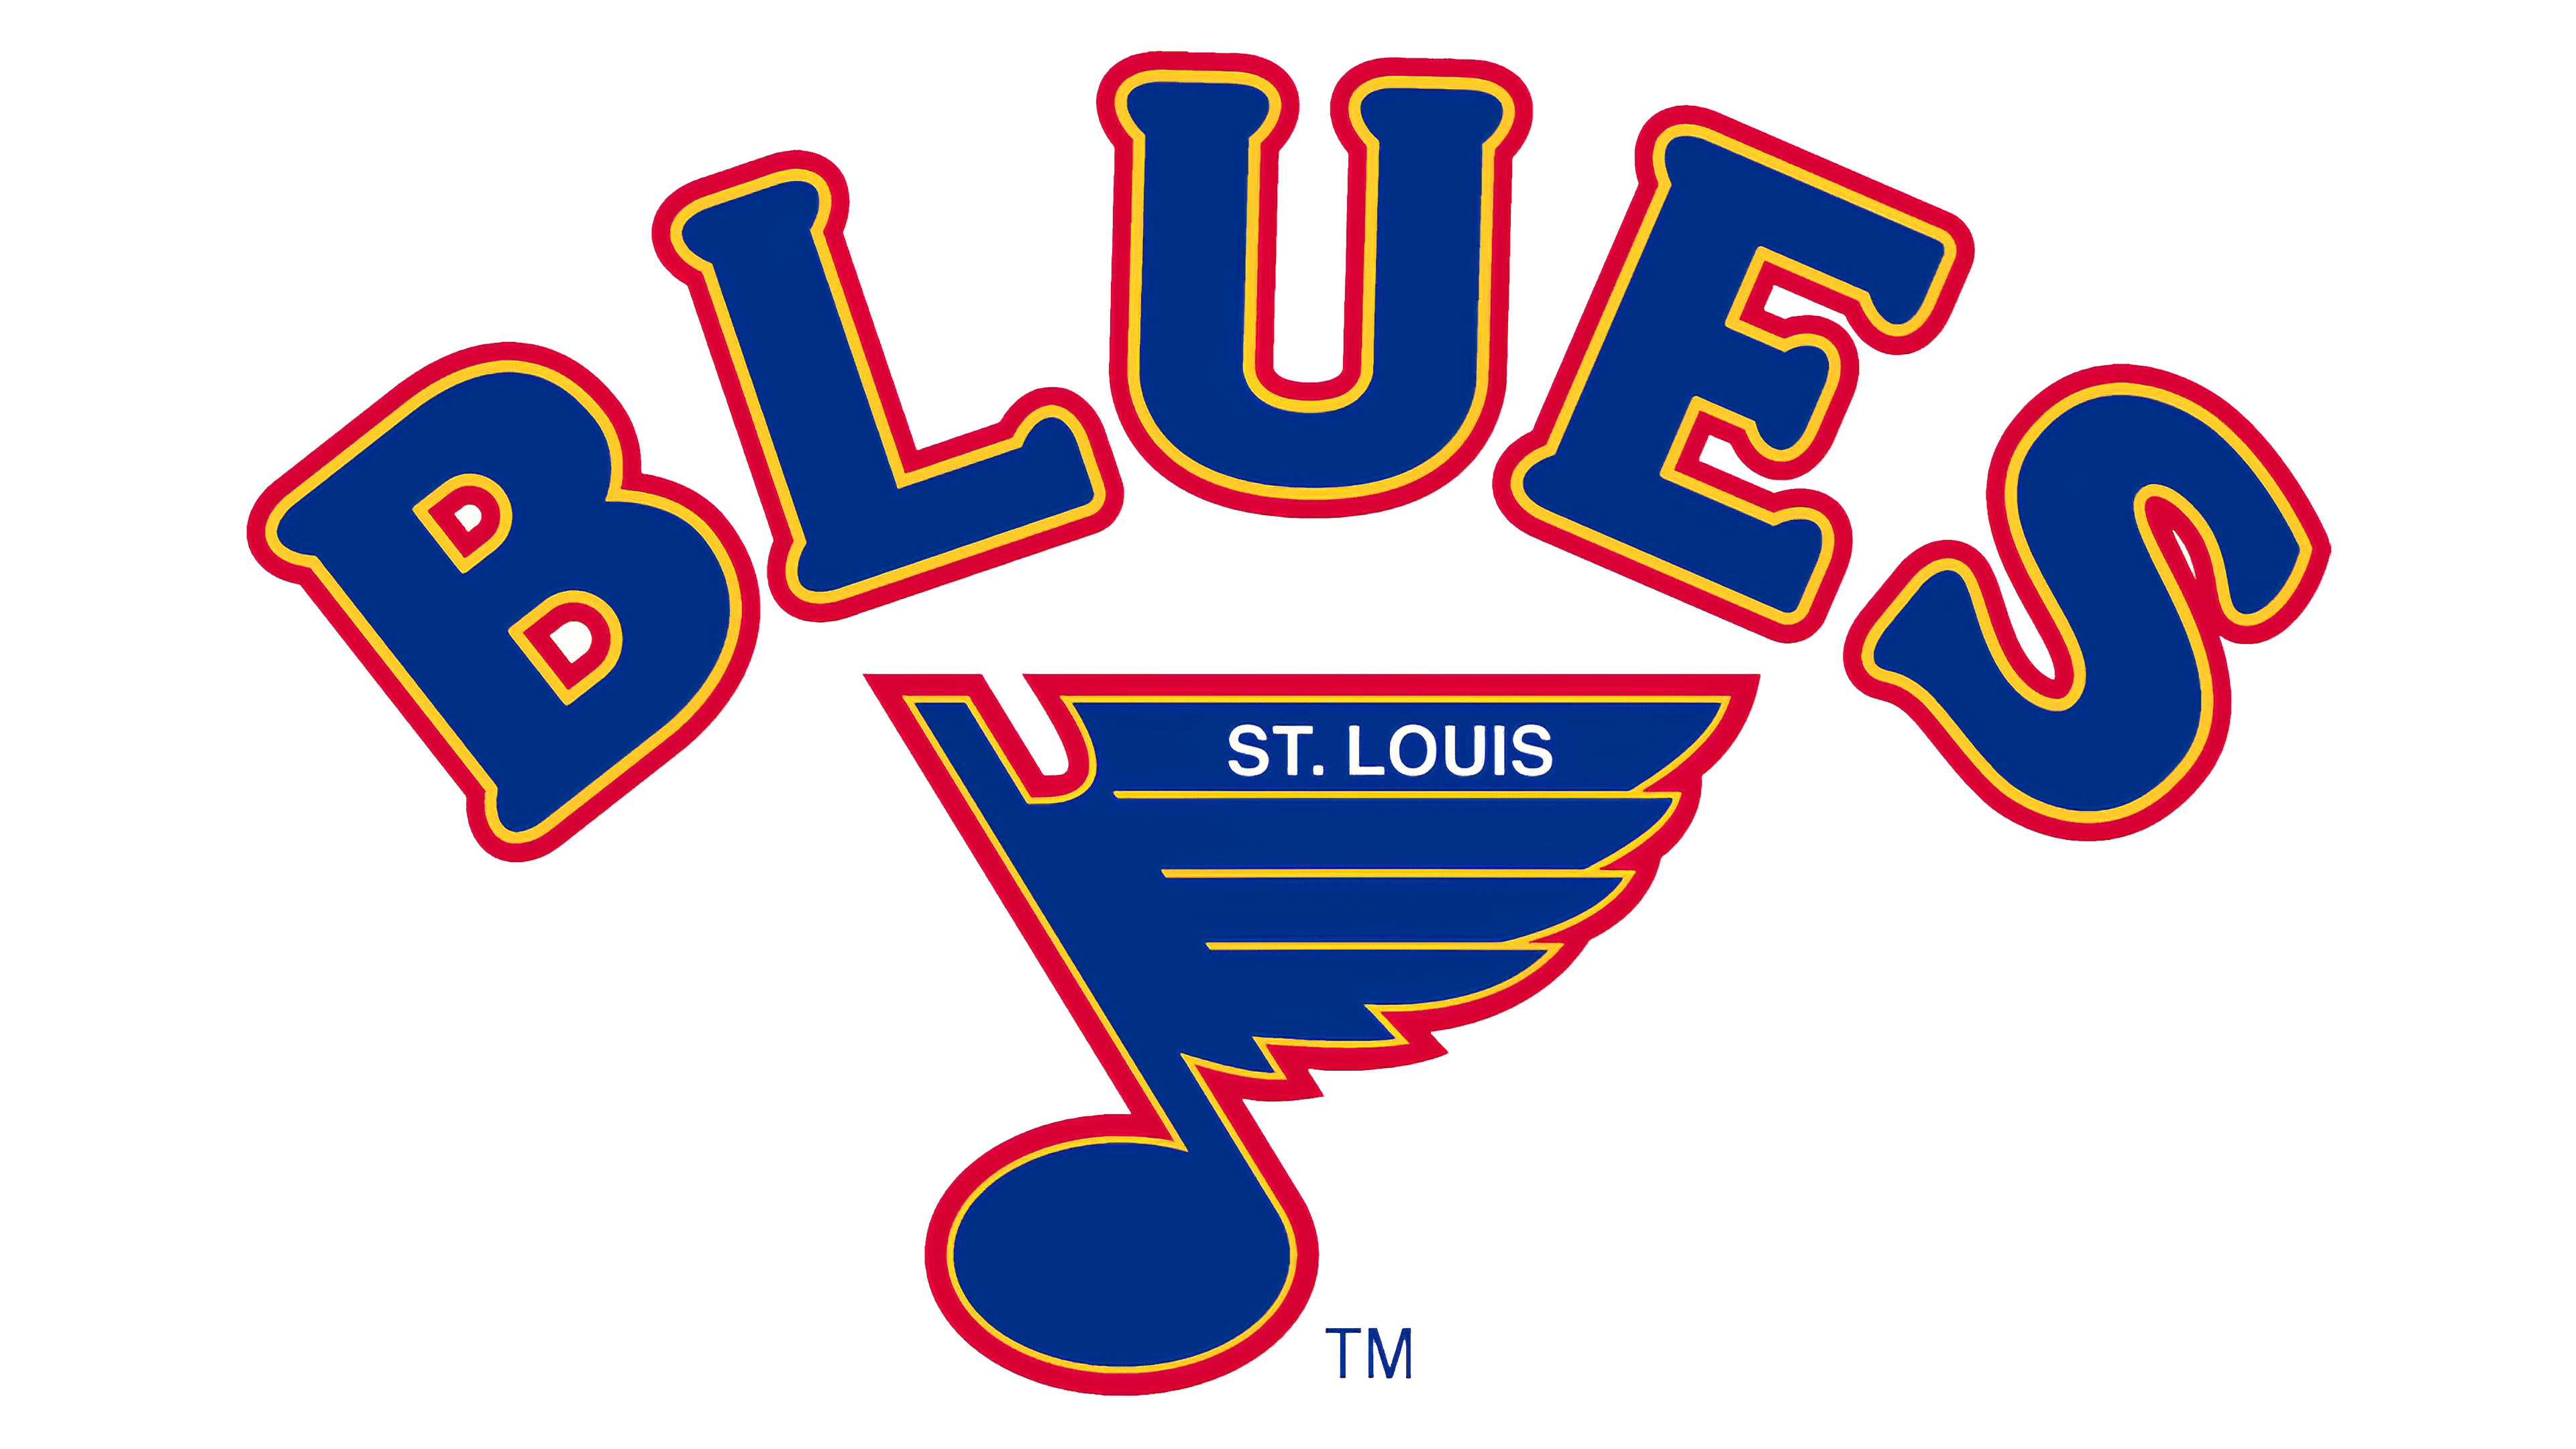 St. Louis Blues Brand Color Codes